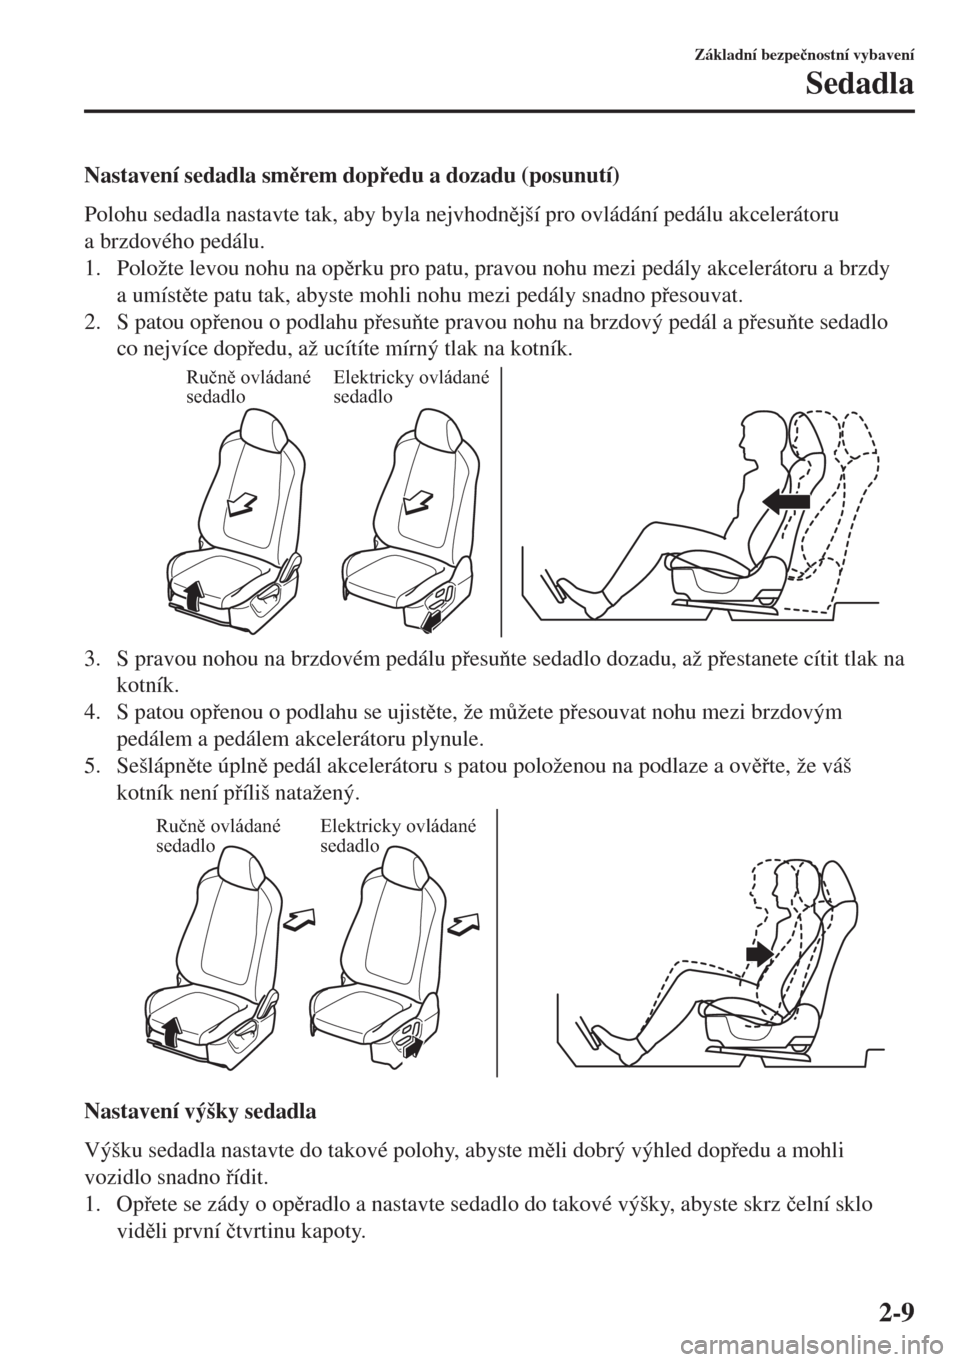 MAZDA MODEL 6 2018  Návod k obsluze (in Czech) Nastavení sedadla smrem dopedu a dozadu (posunutí)
Polohu sedadla nastavte tak, aby byla nejvhodnjší pro ovládání pedálu akcelerátoru
a brzdového pedálu.
1. Položte levou nohu na op